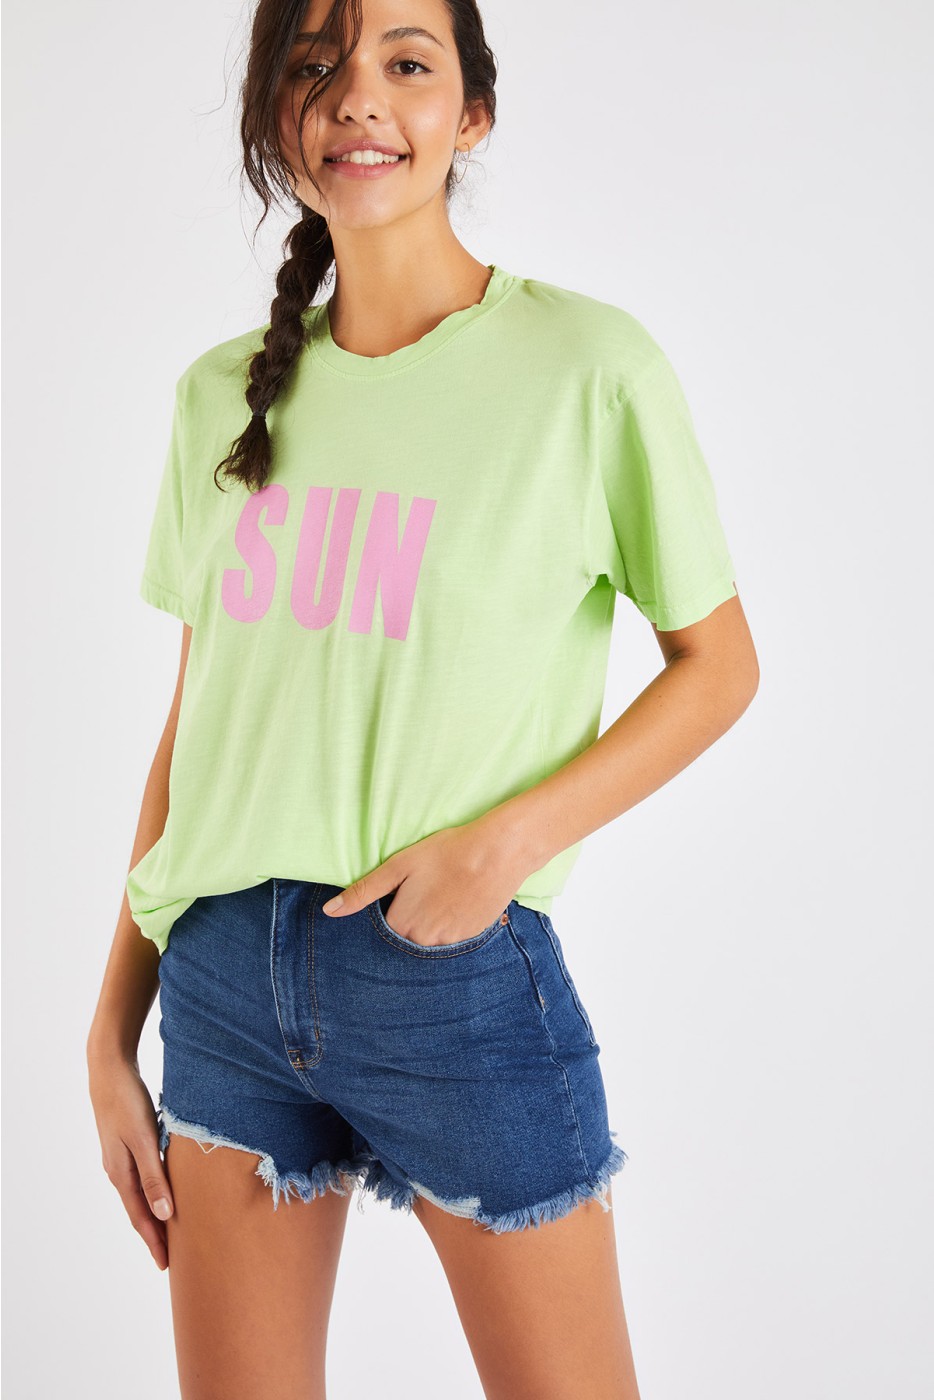 Carlo Teeclub women's anise green t-shirt | Banana Moon®